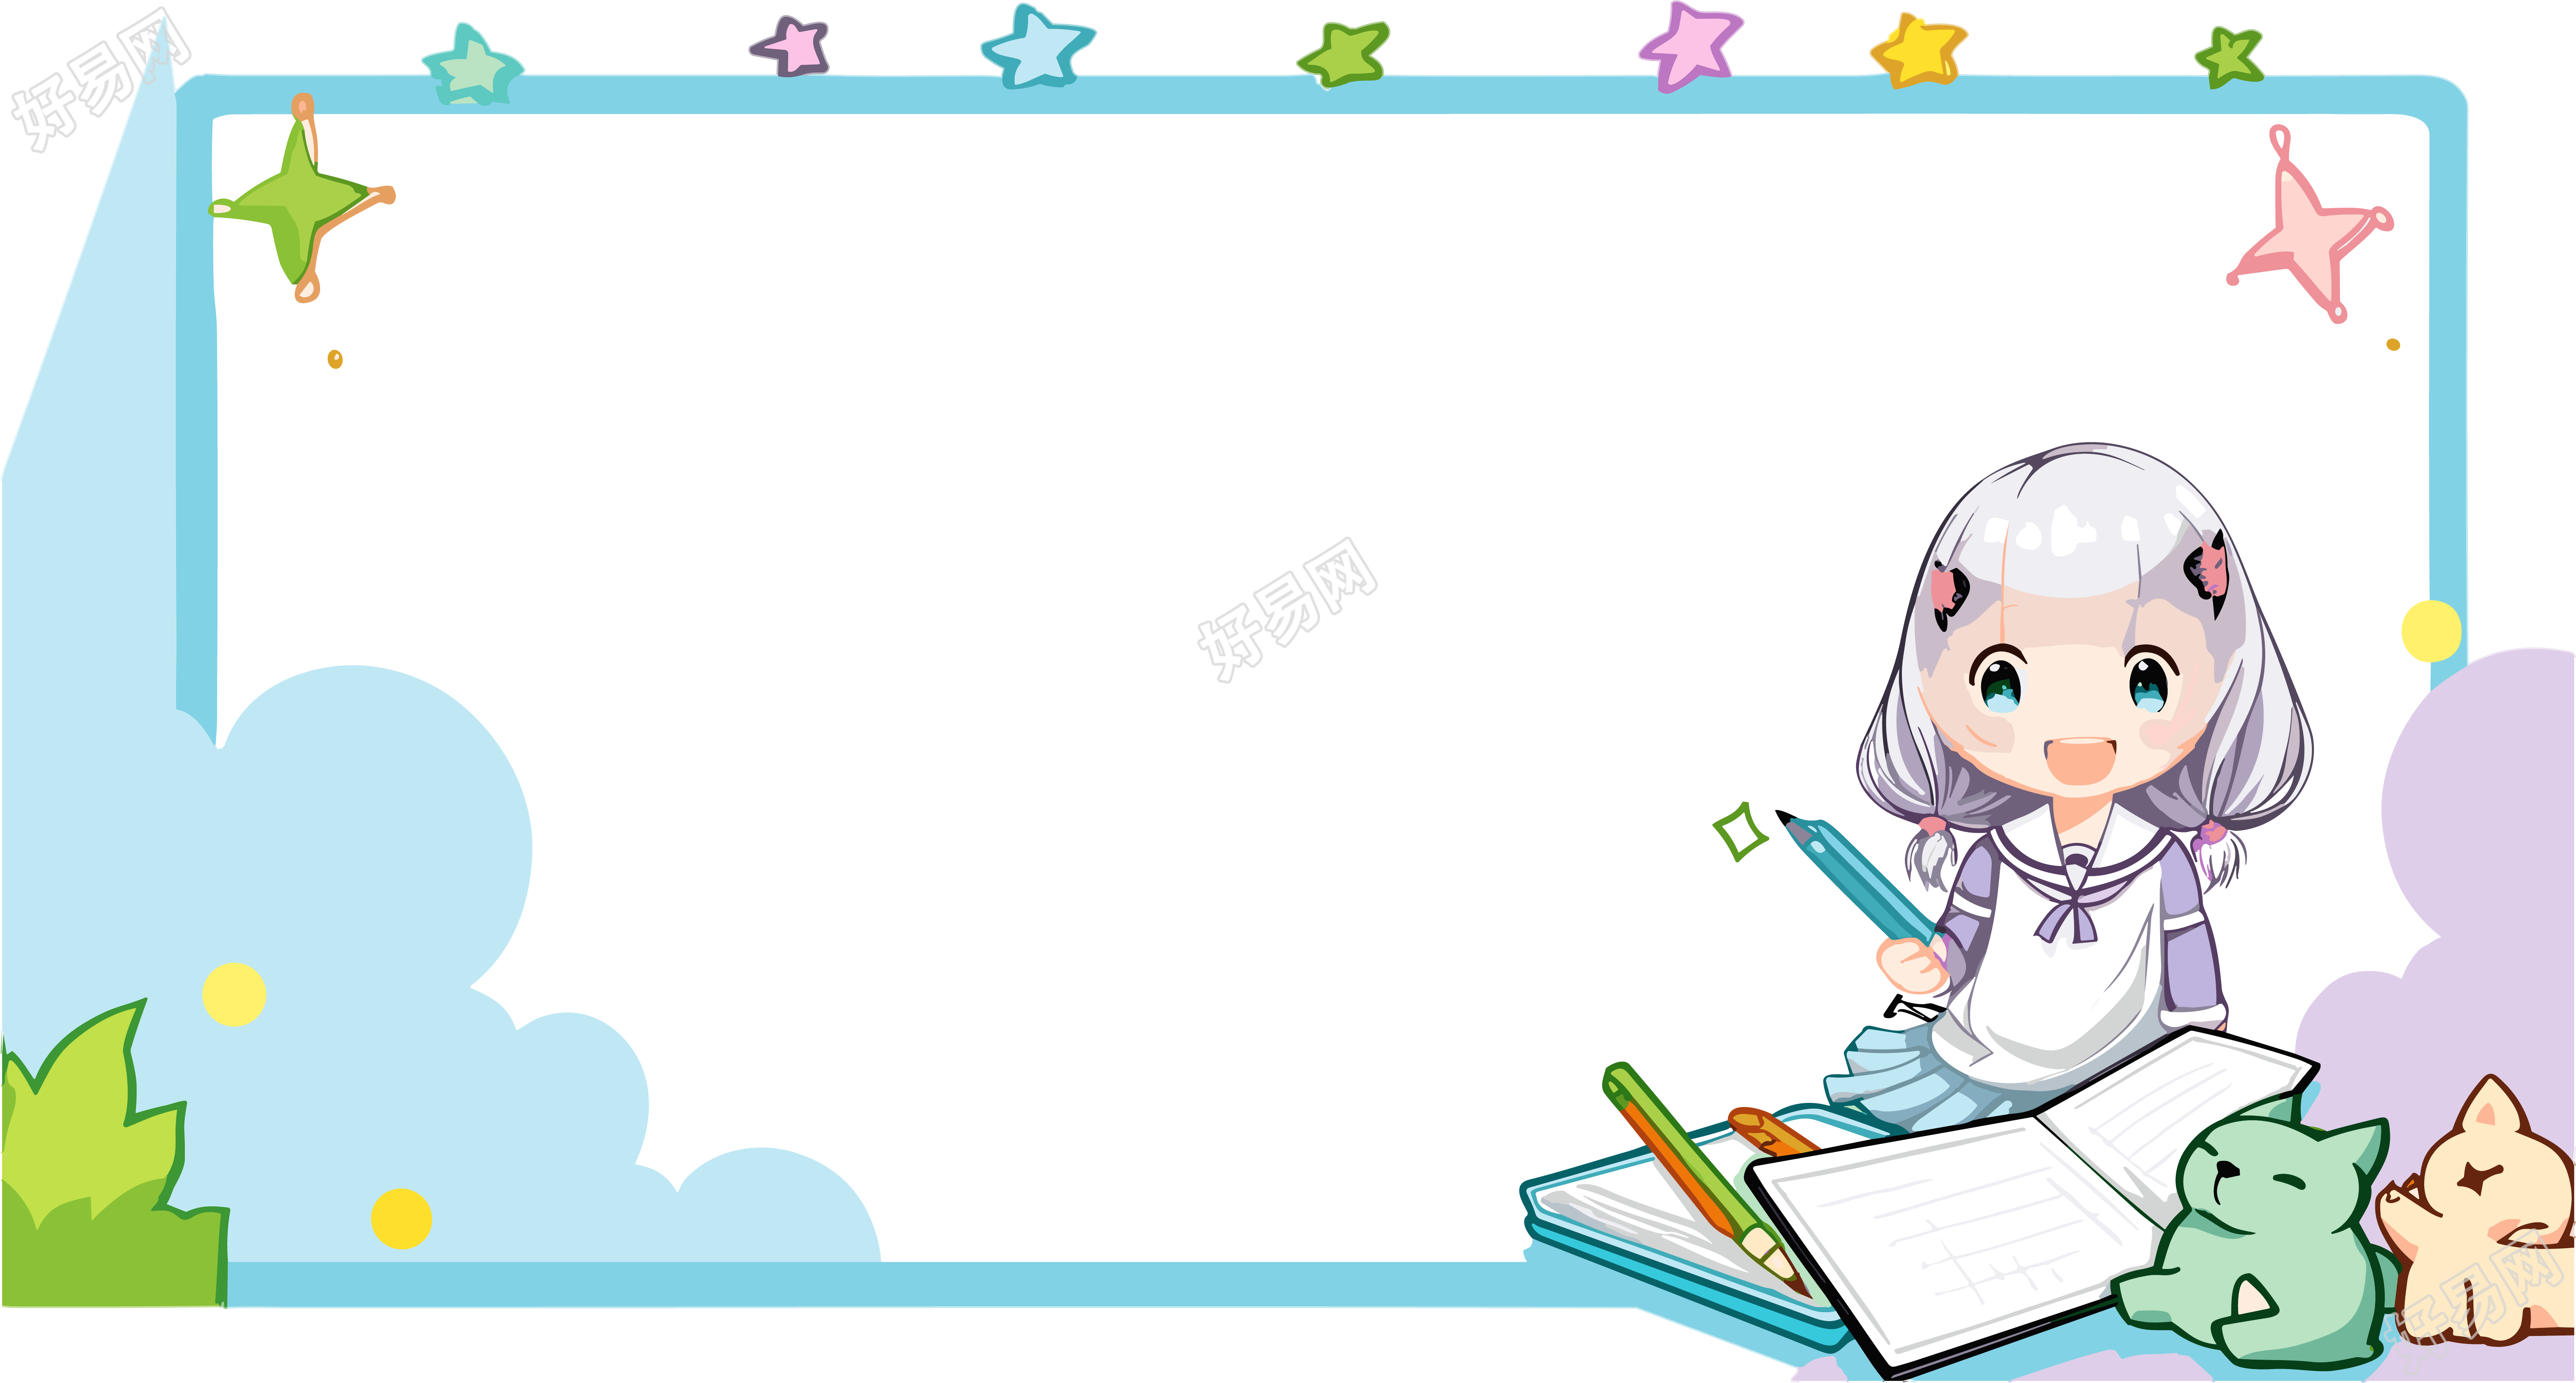 可爱卡通形状边框的少女学习PNG图形素材